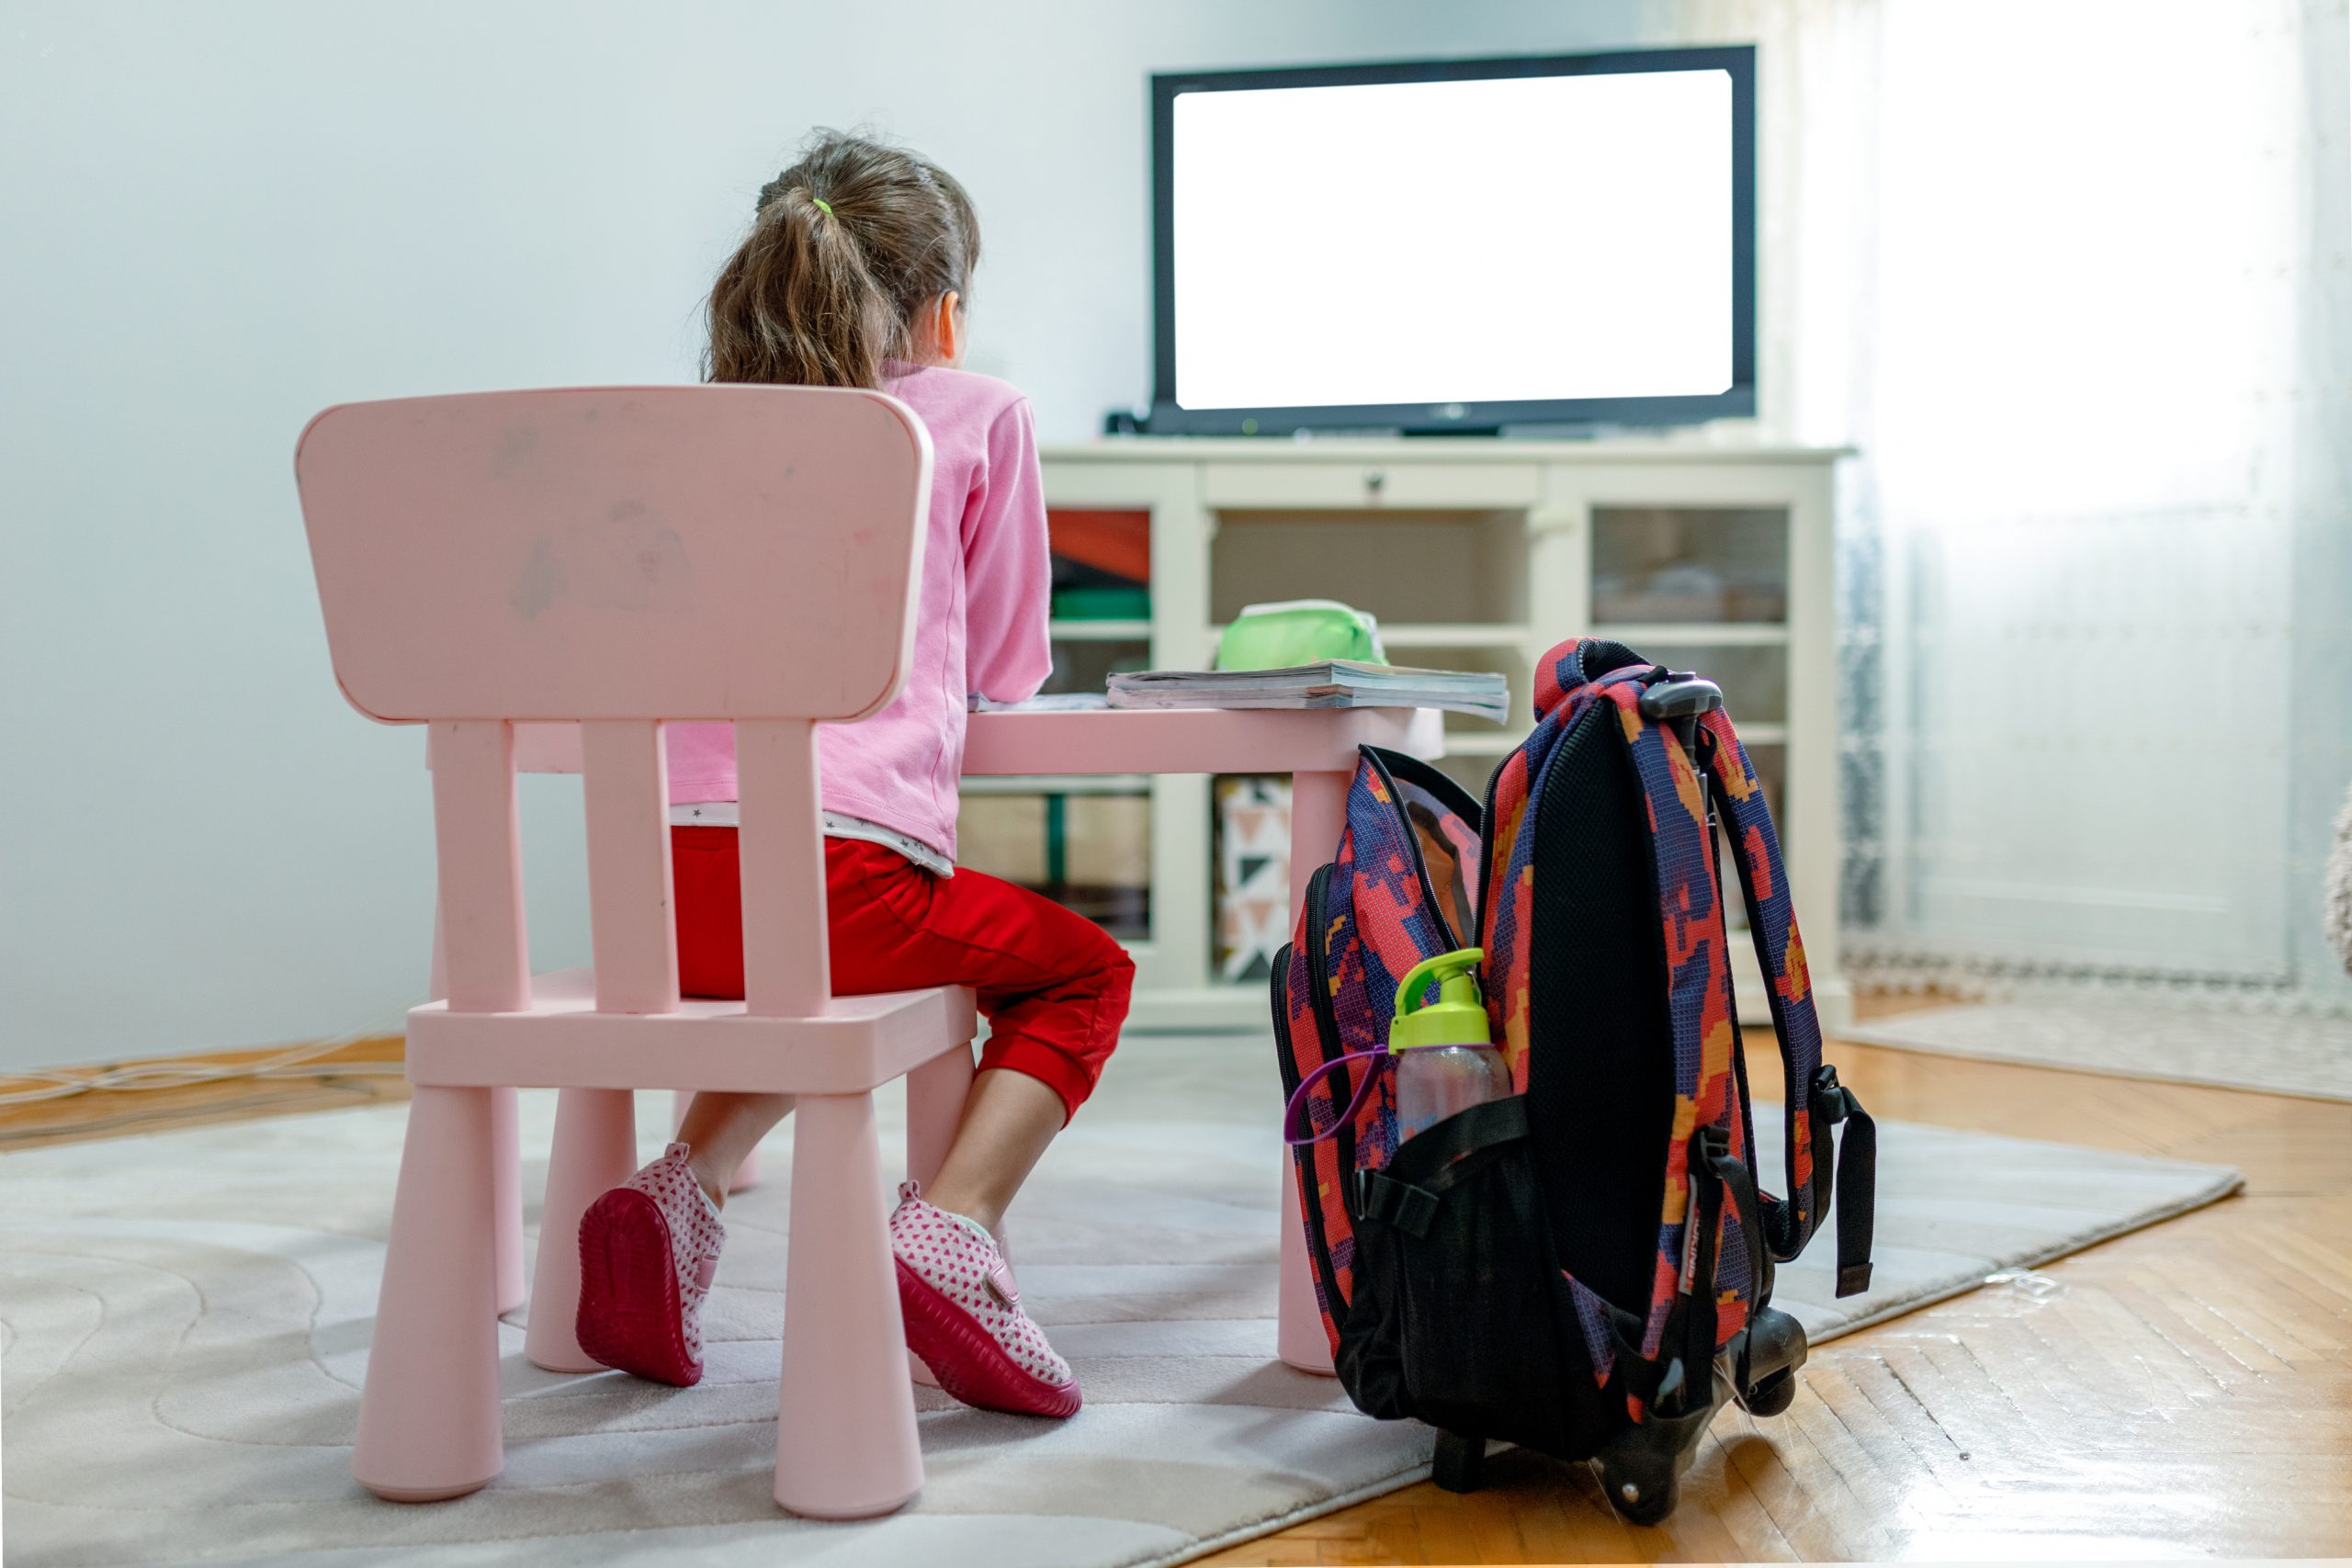 Πόση τηλεόραση κάνει να βλέπει το παιδί; Η παιδίατρος συμβουλεύει